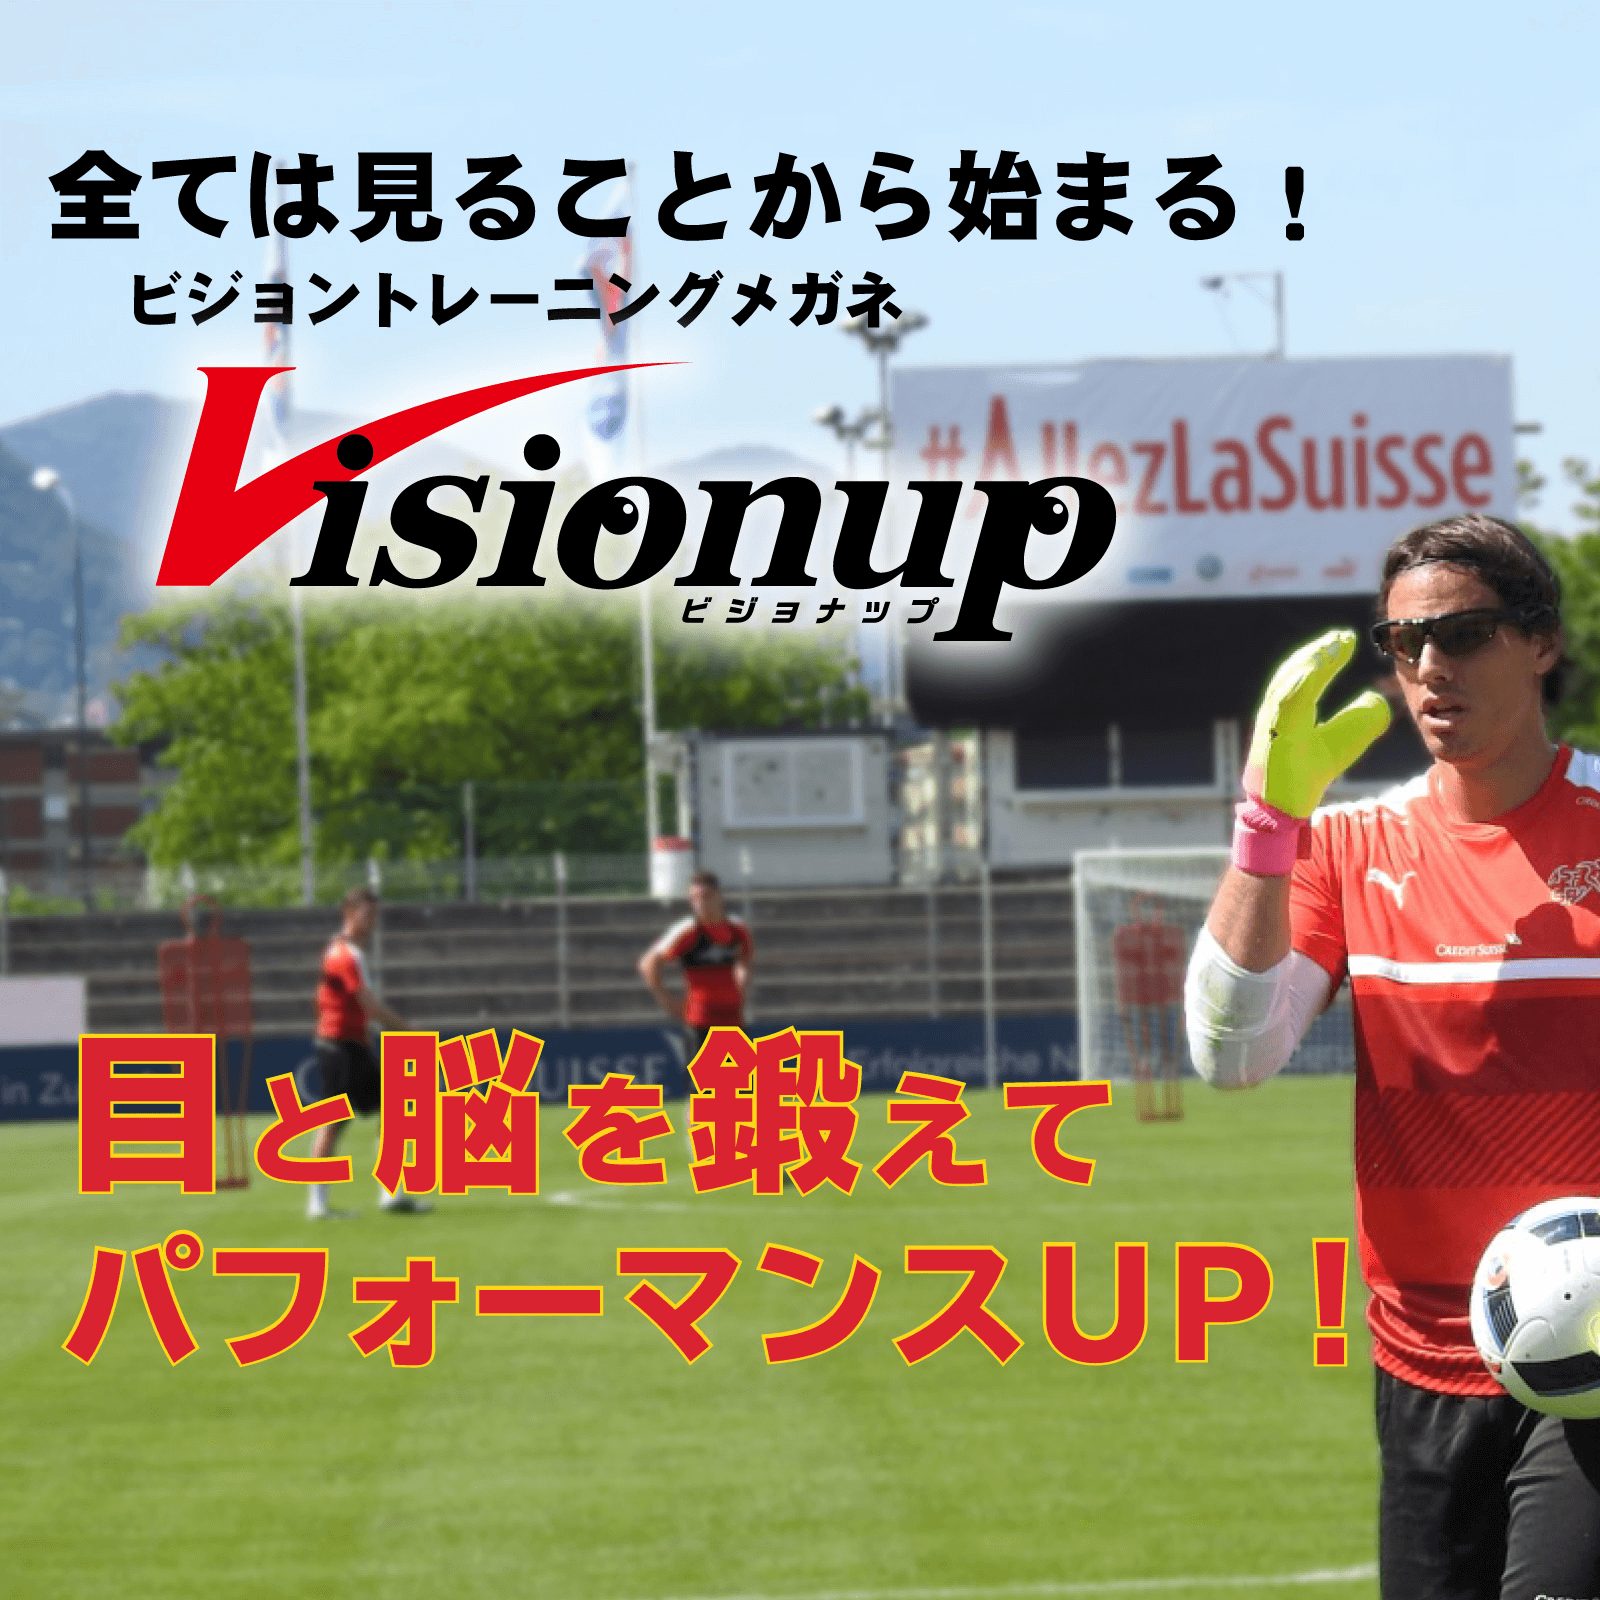 visionup ビジョナップ スポーツトレーニング